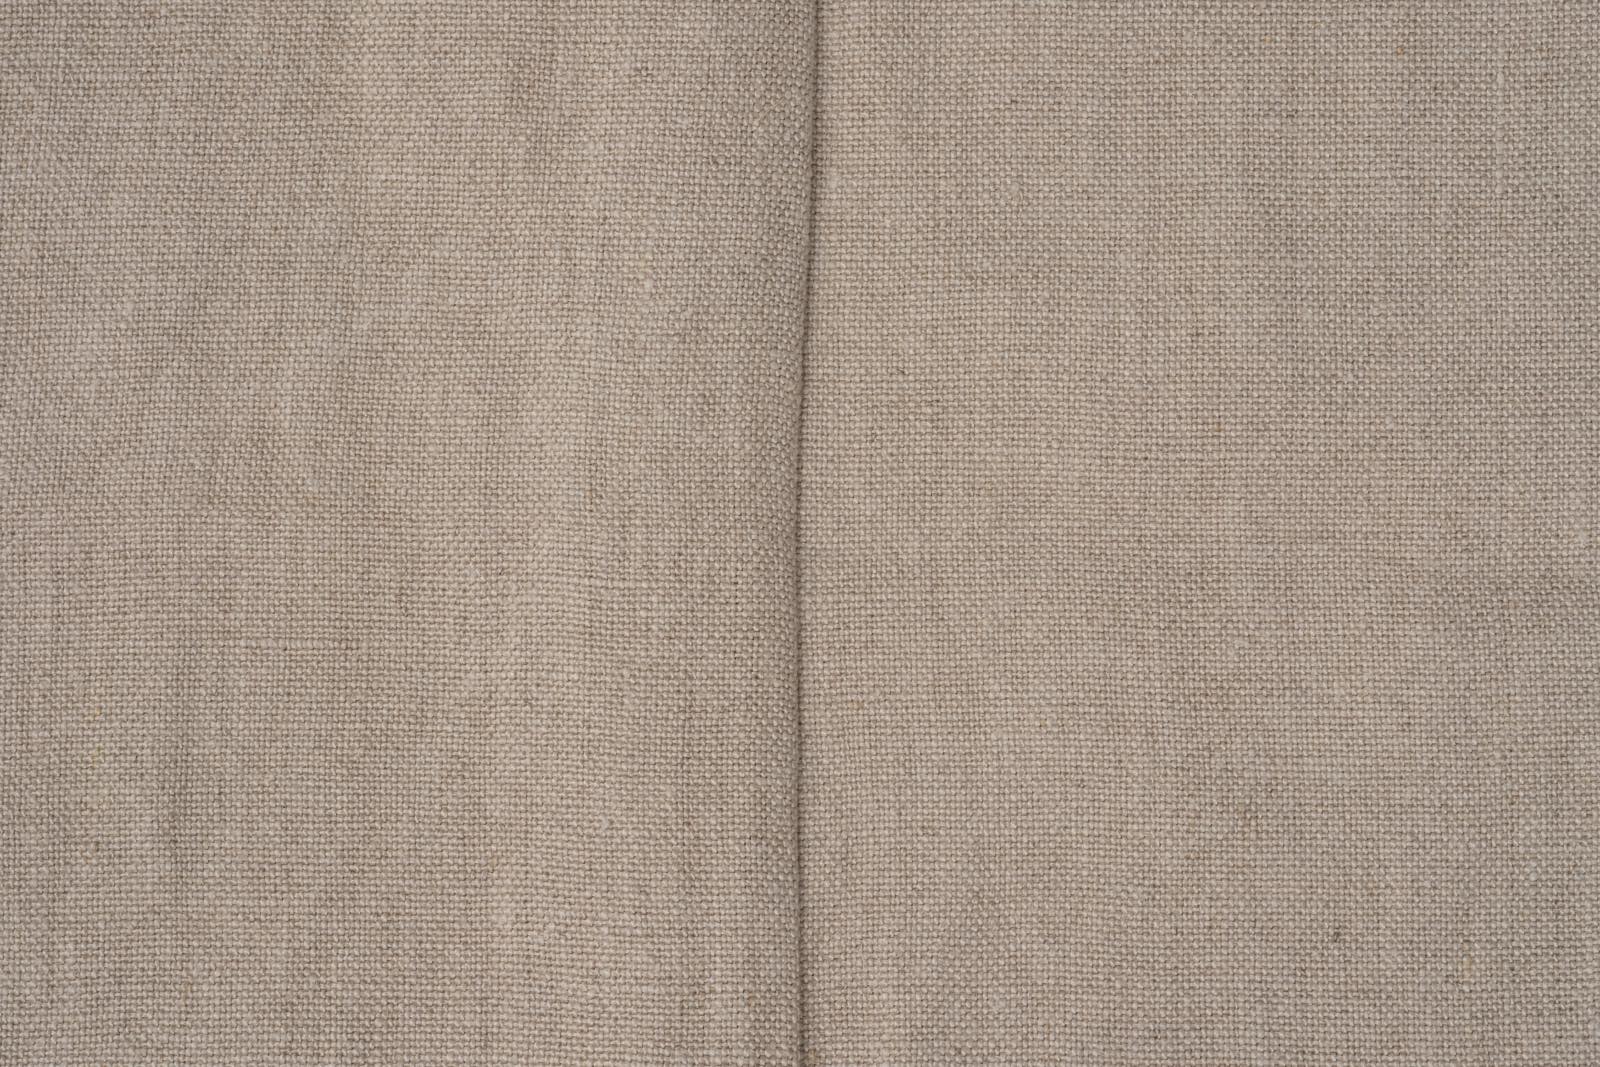 セルヴィッチリネンカーテン フラット スタイル ネイビー DW-CB005-03-G114 1.5巾と2巾には1カ所、2.5巾と3巾には2カ所にこのような継ぎ目がでます